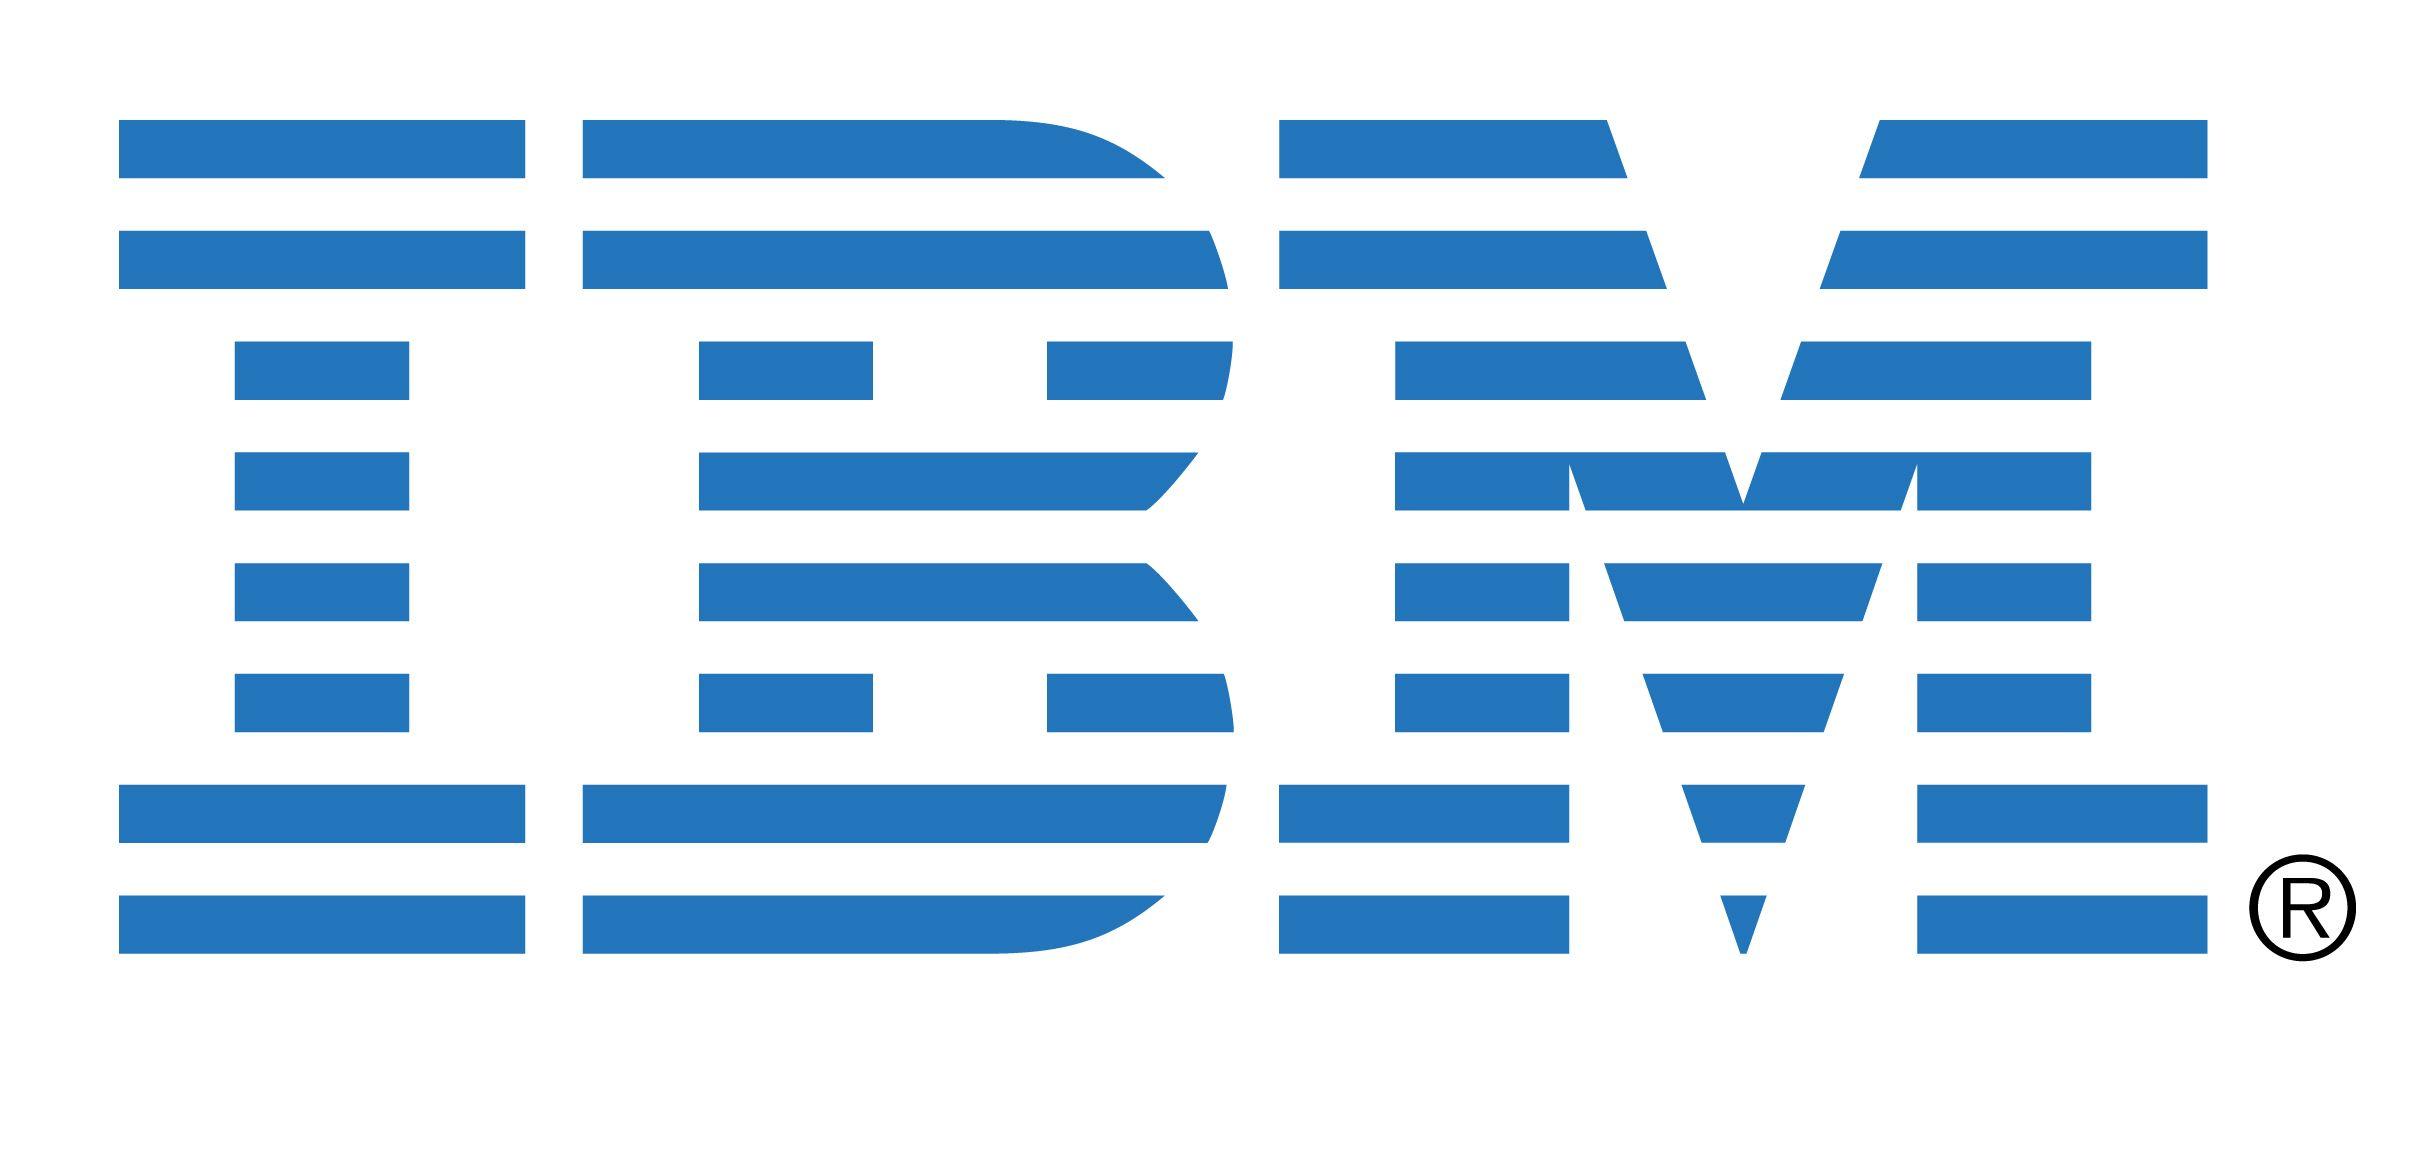 IBM Vector Logo - Ibm Png & Transparent Images #72 - PNGio